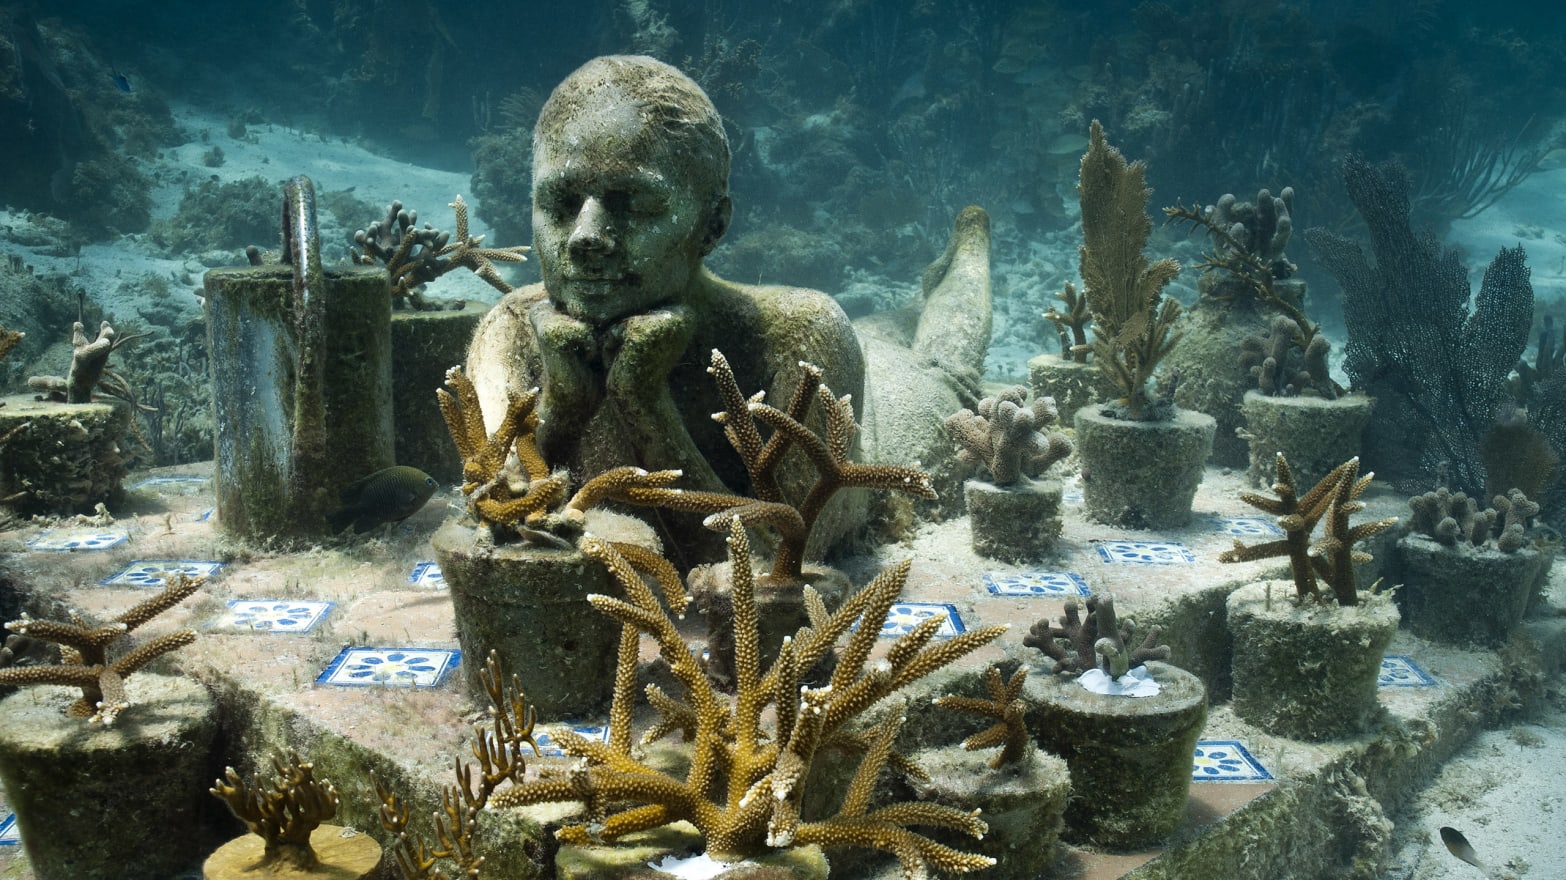 nicotine Geef rechten Hopelijk Artist Jason deCaires Taylor's Underwater Sculptures Are a Sight to Sea